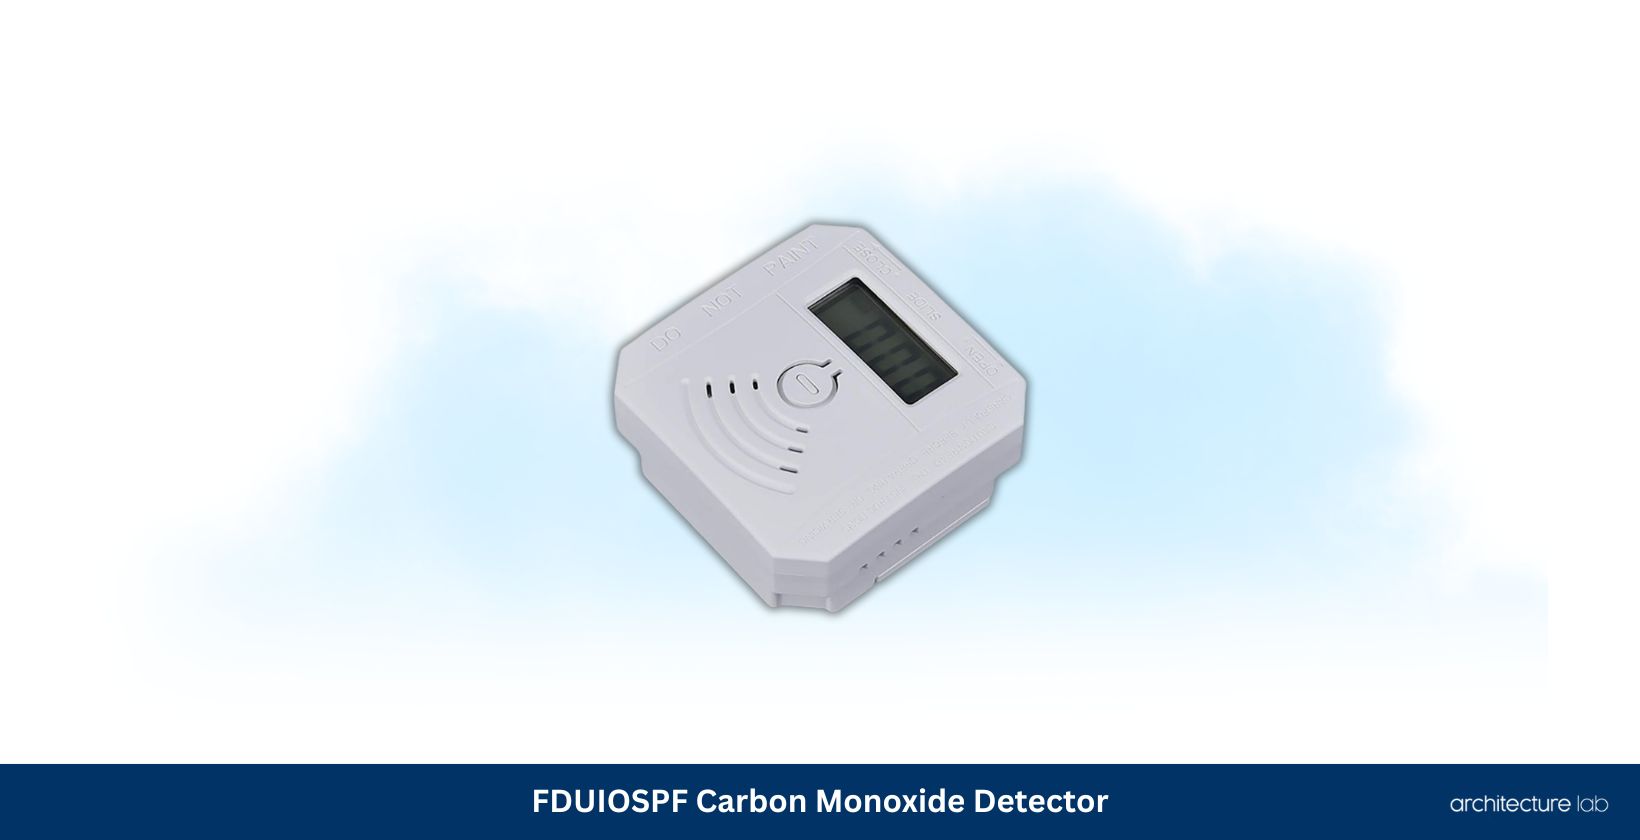 Fduiospf carbon monoxide detector